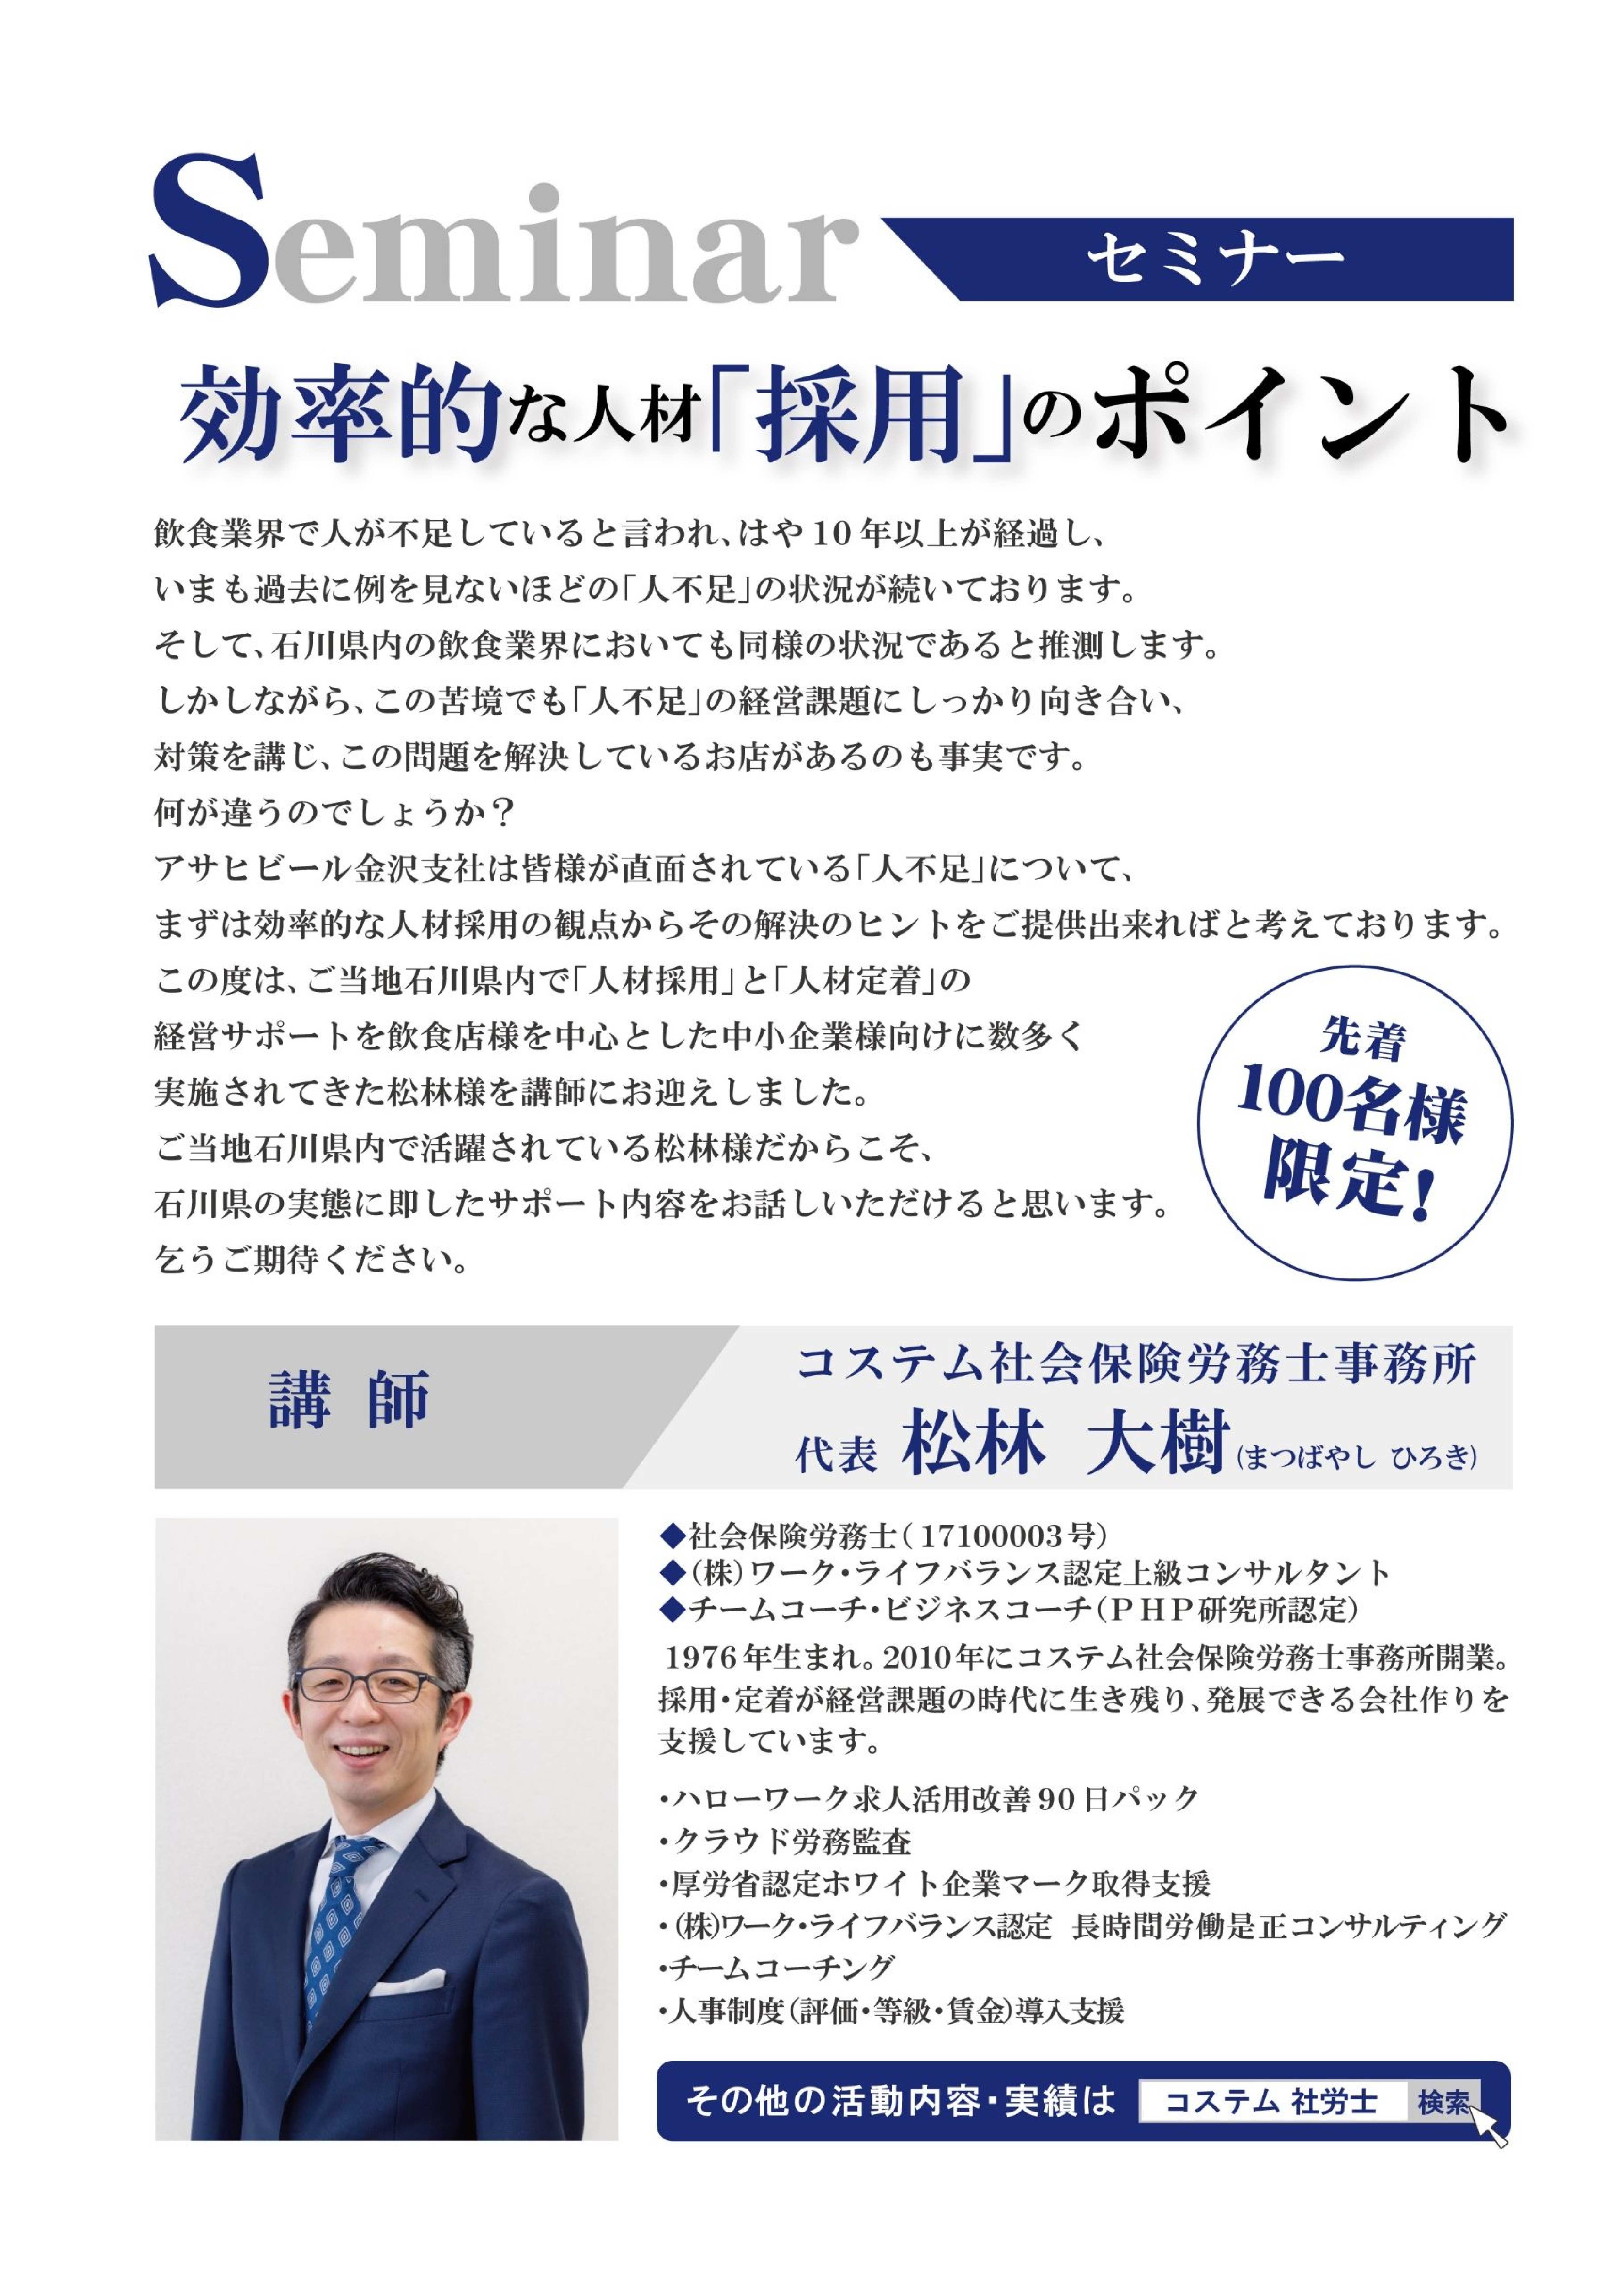 アサヒビール様のイベントで 登壇決定 お知らせ コステム社会保険労務士事務所 石川県 金沢市